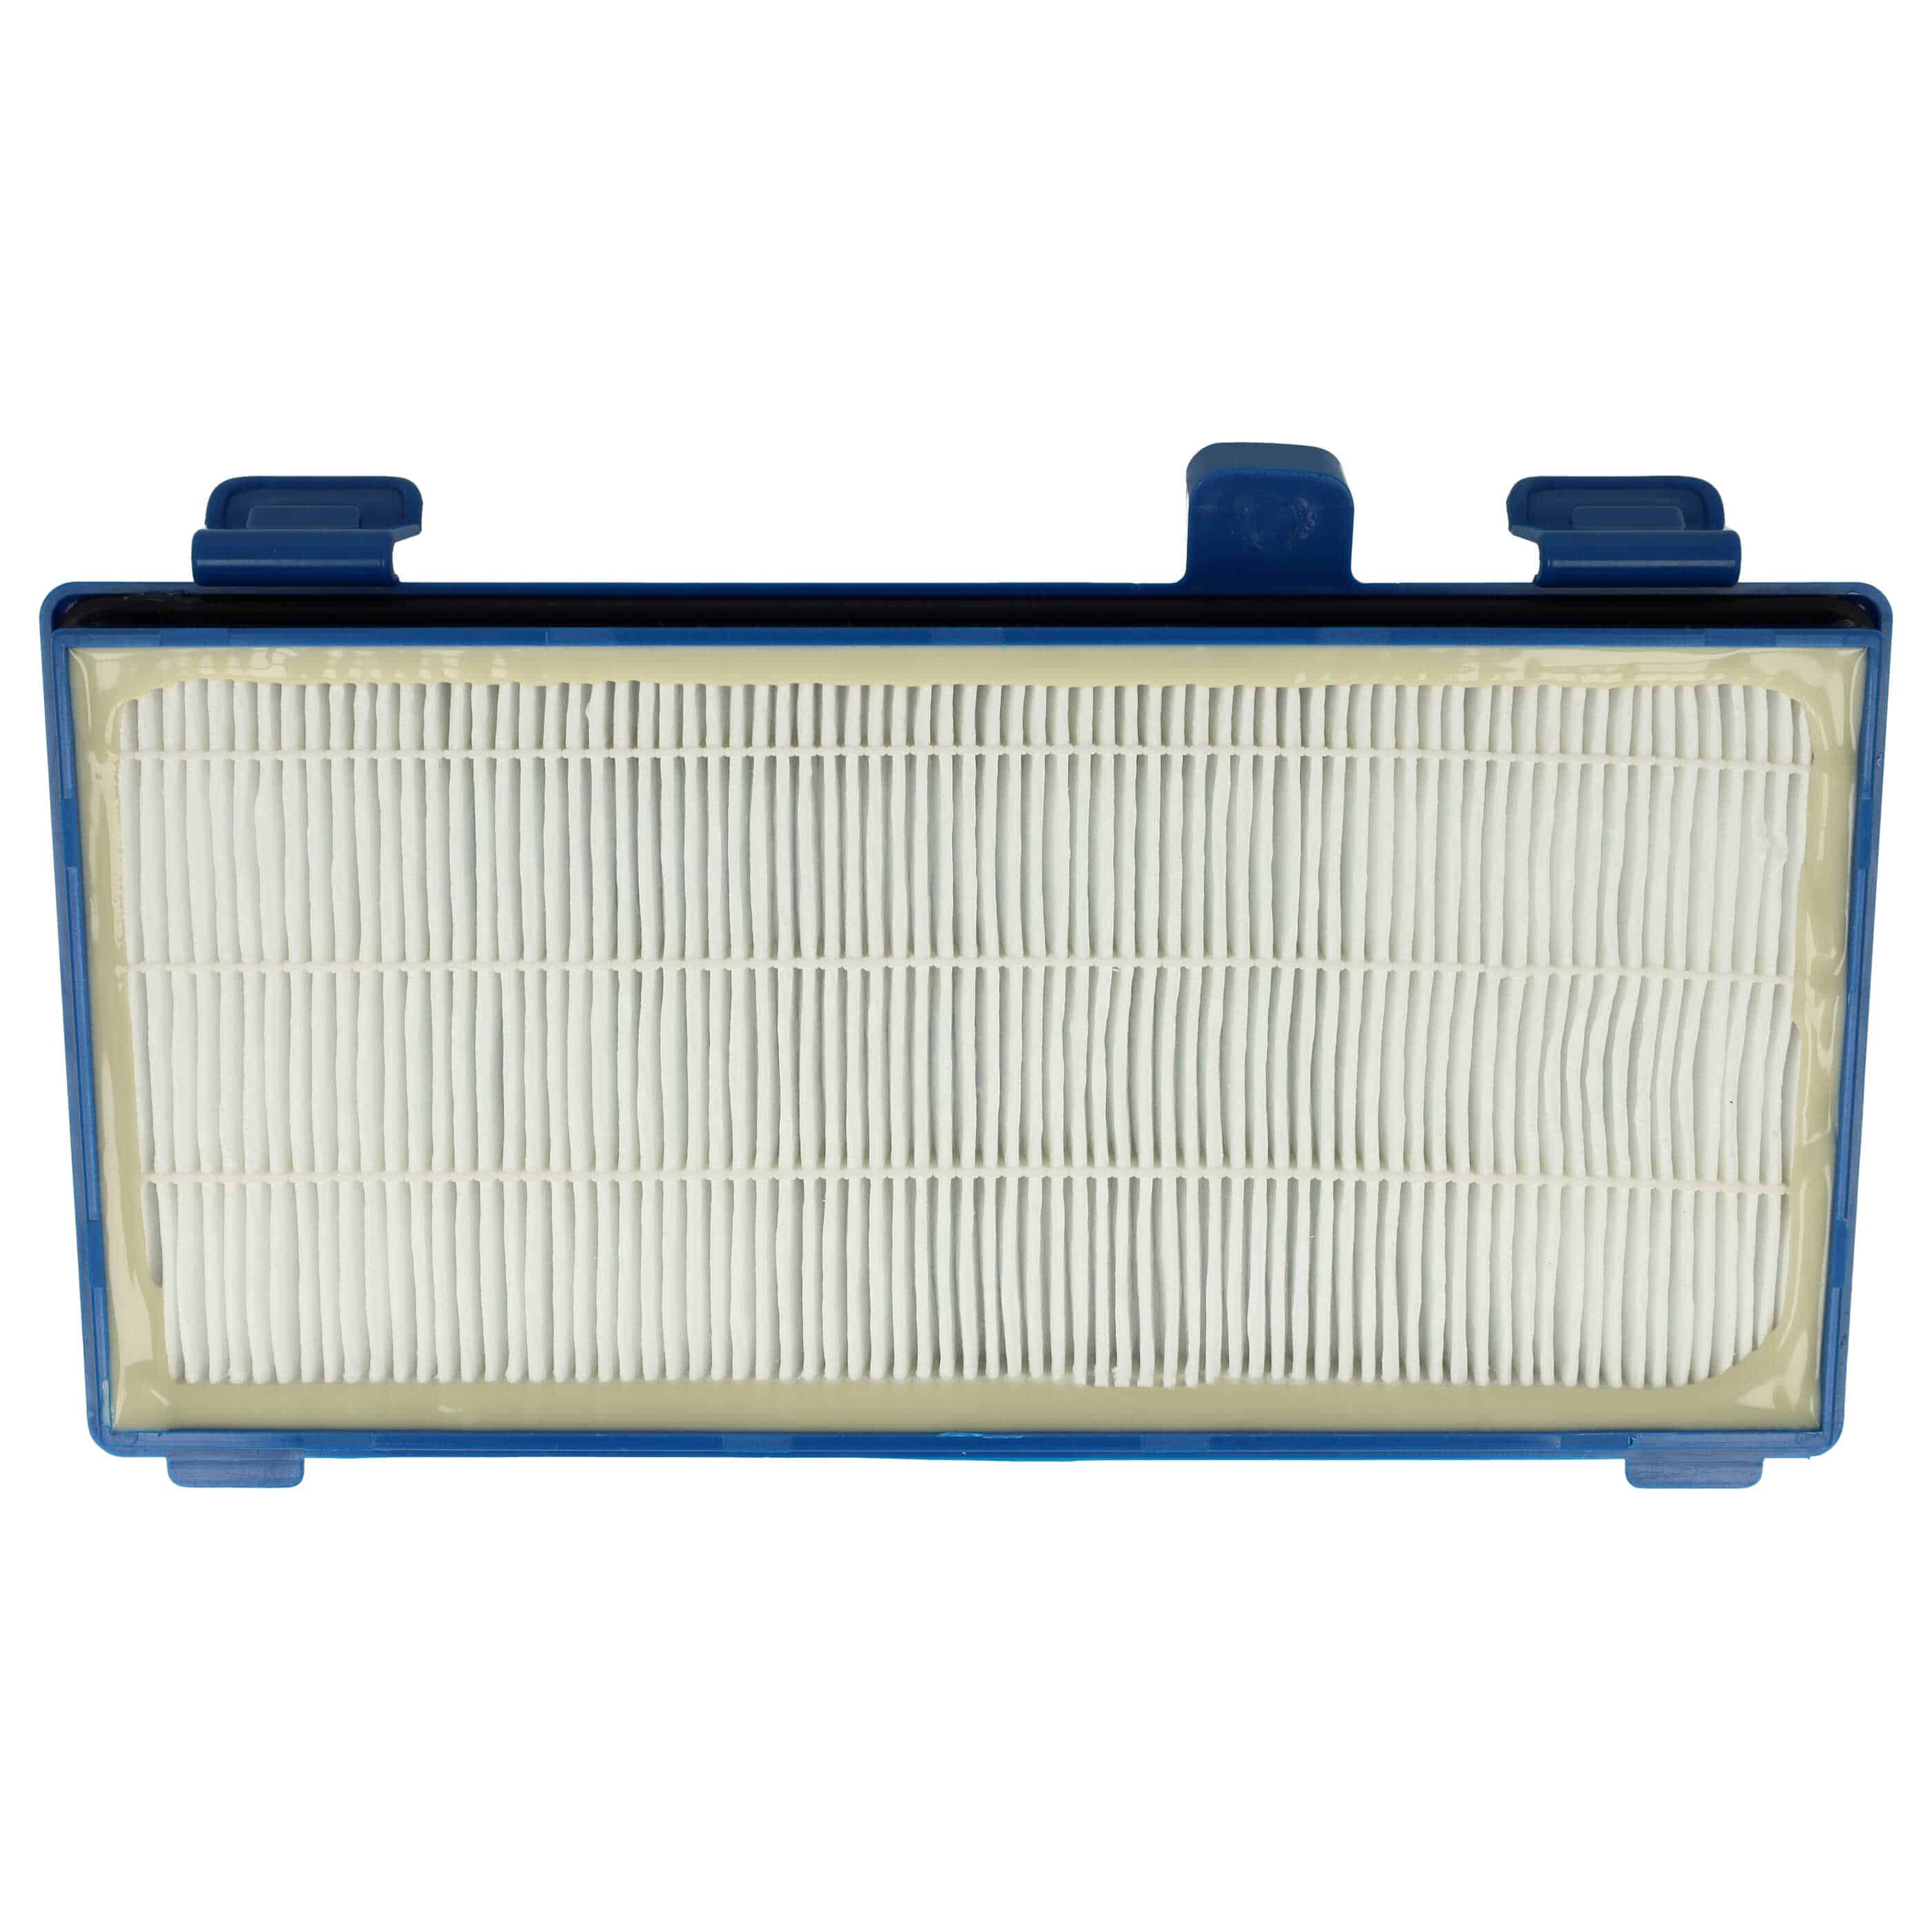 Filtro sostituisce Rowenta RS-RT3931, ZR902301 per aspirapolvere - filtro HEPA, bianco / blu